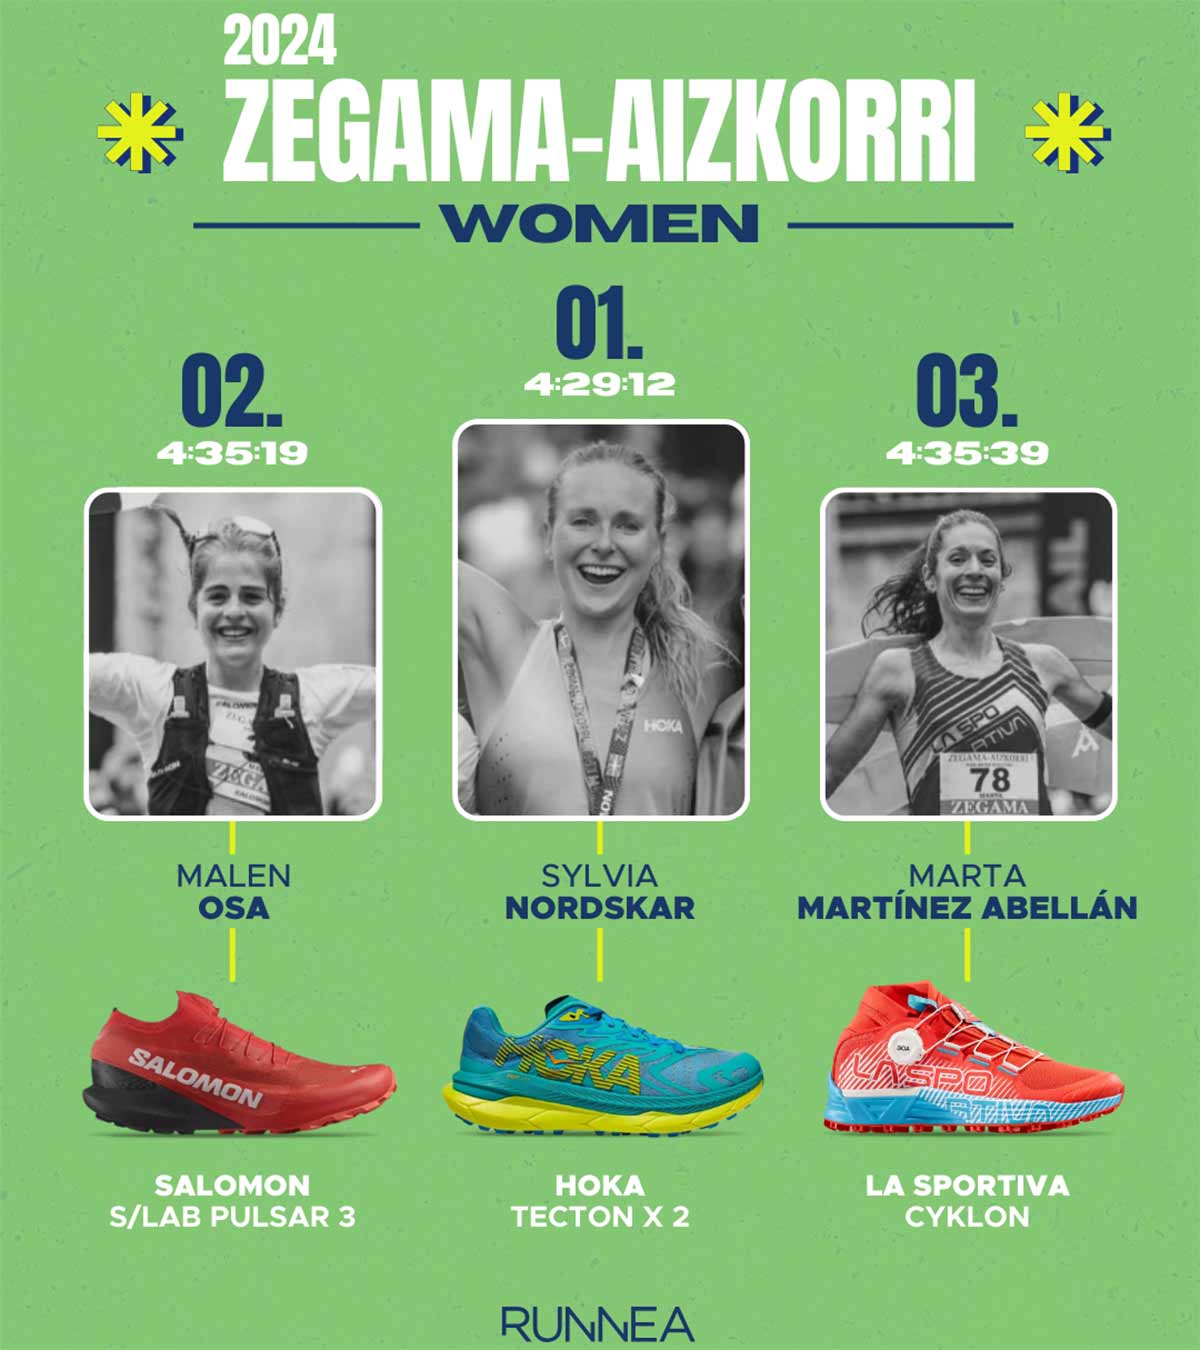 Chaussures trail running ayant remporté le Zegama-Aizkorri 2024 chez les femmes